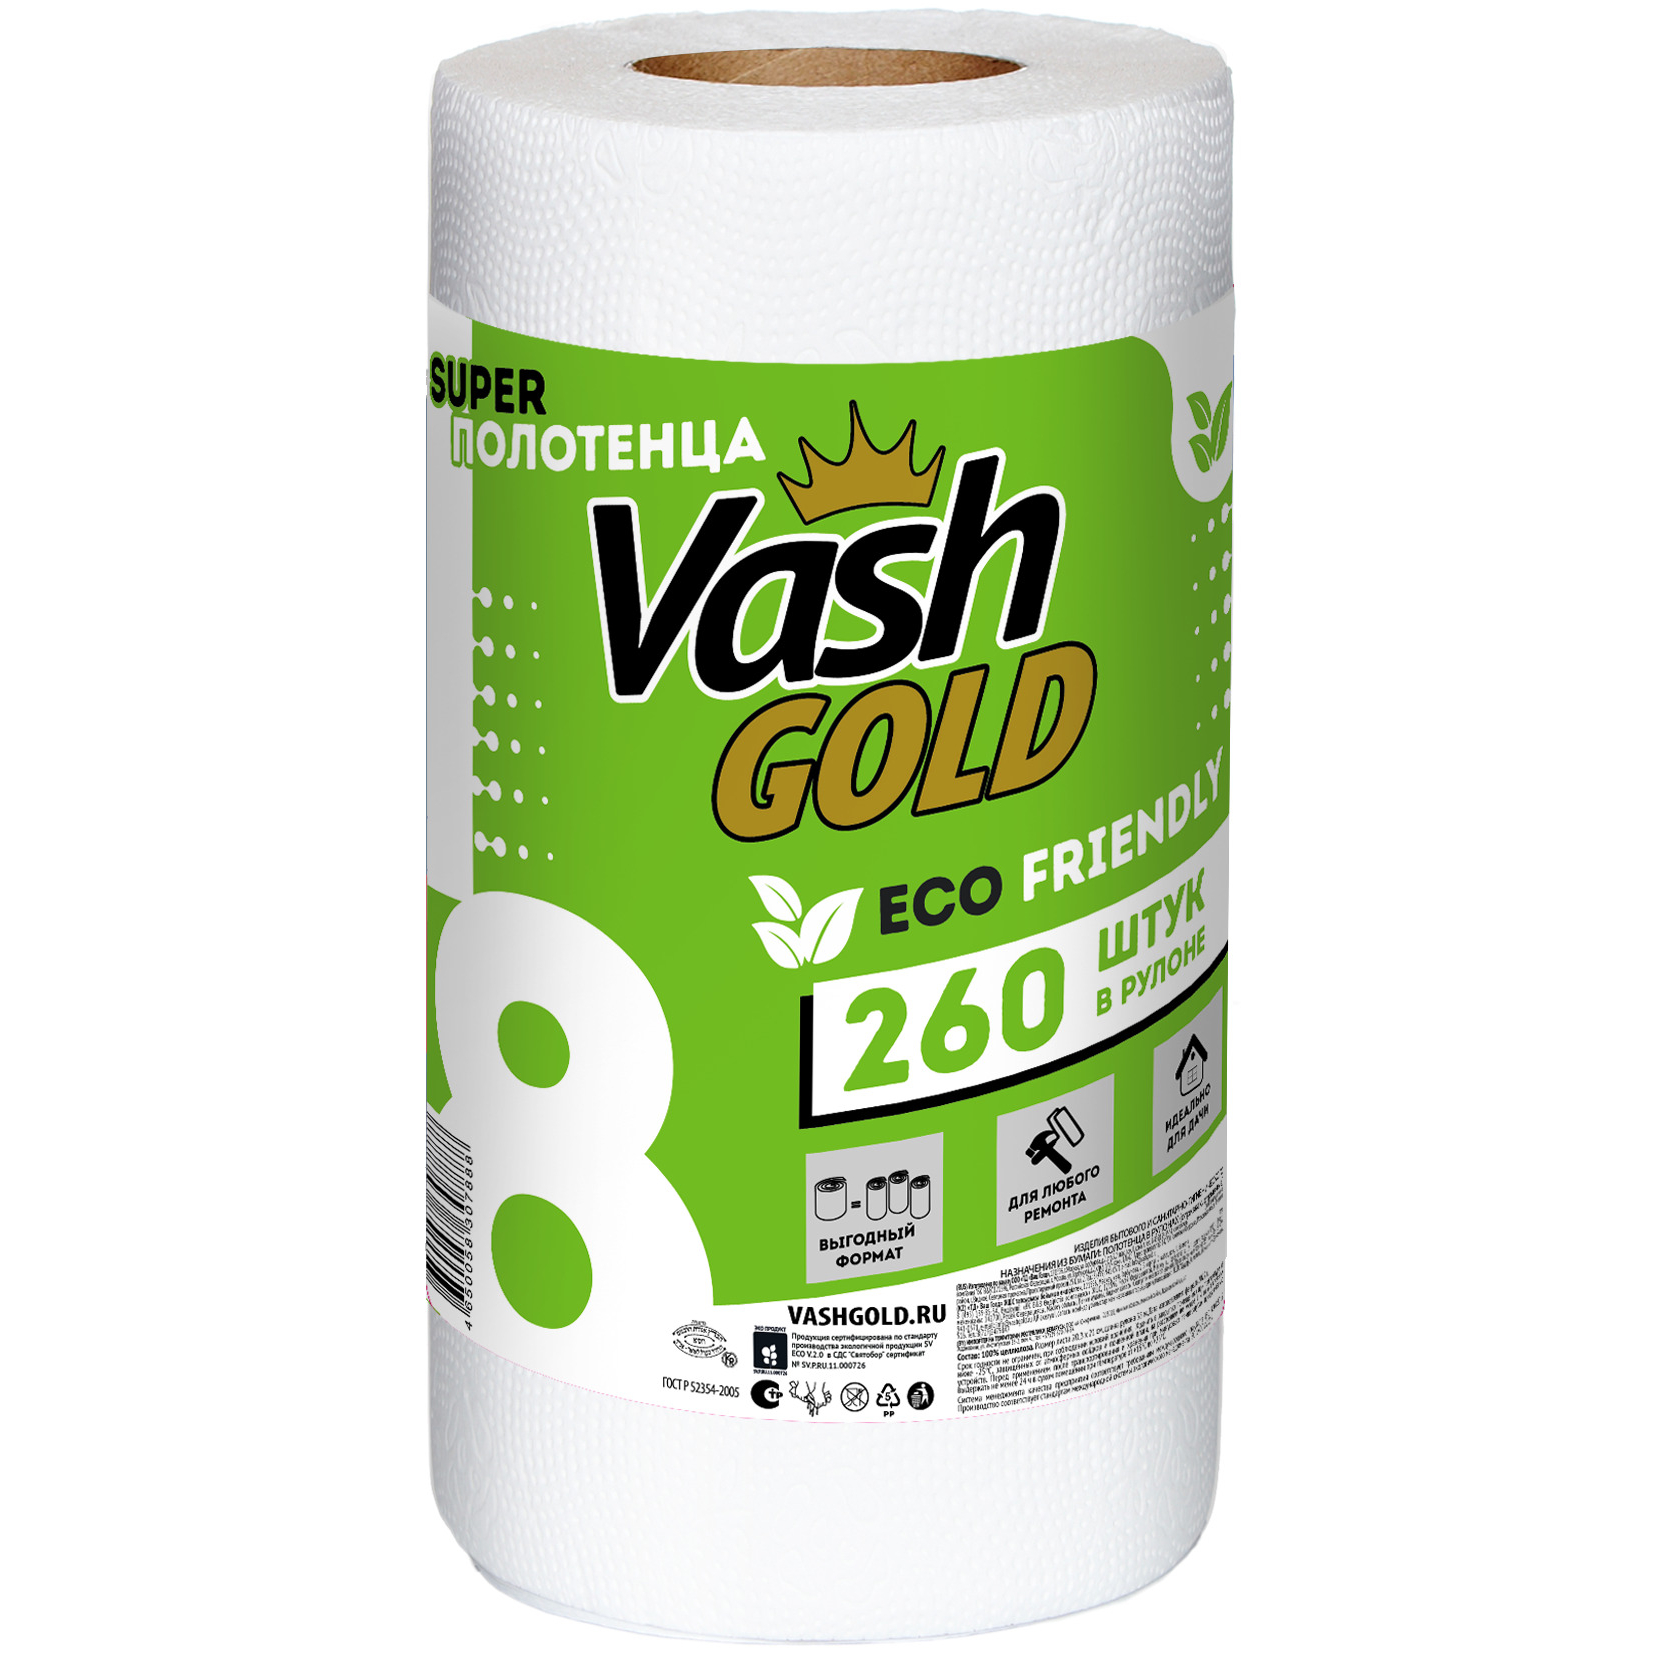 Полотенца Vash Gold Eco Friendly универсальные отрывные 260 листов в рулоне, цвет белый